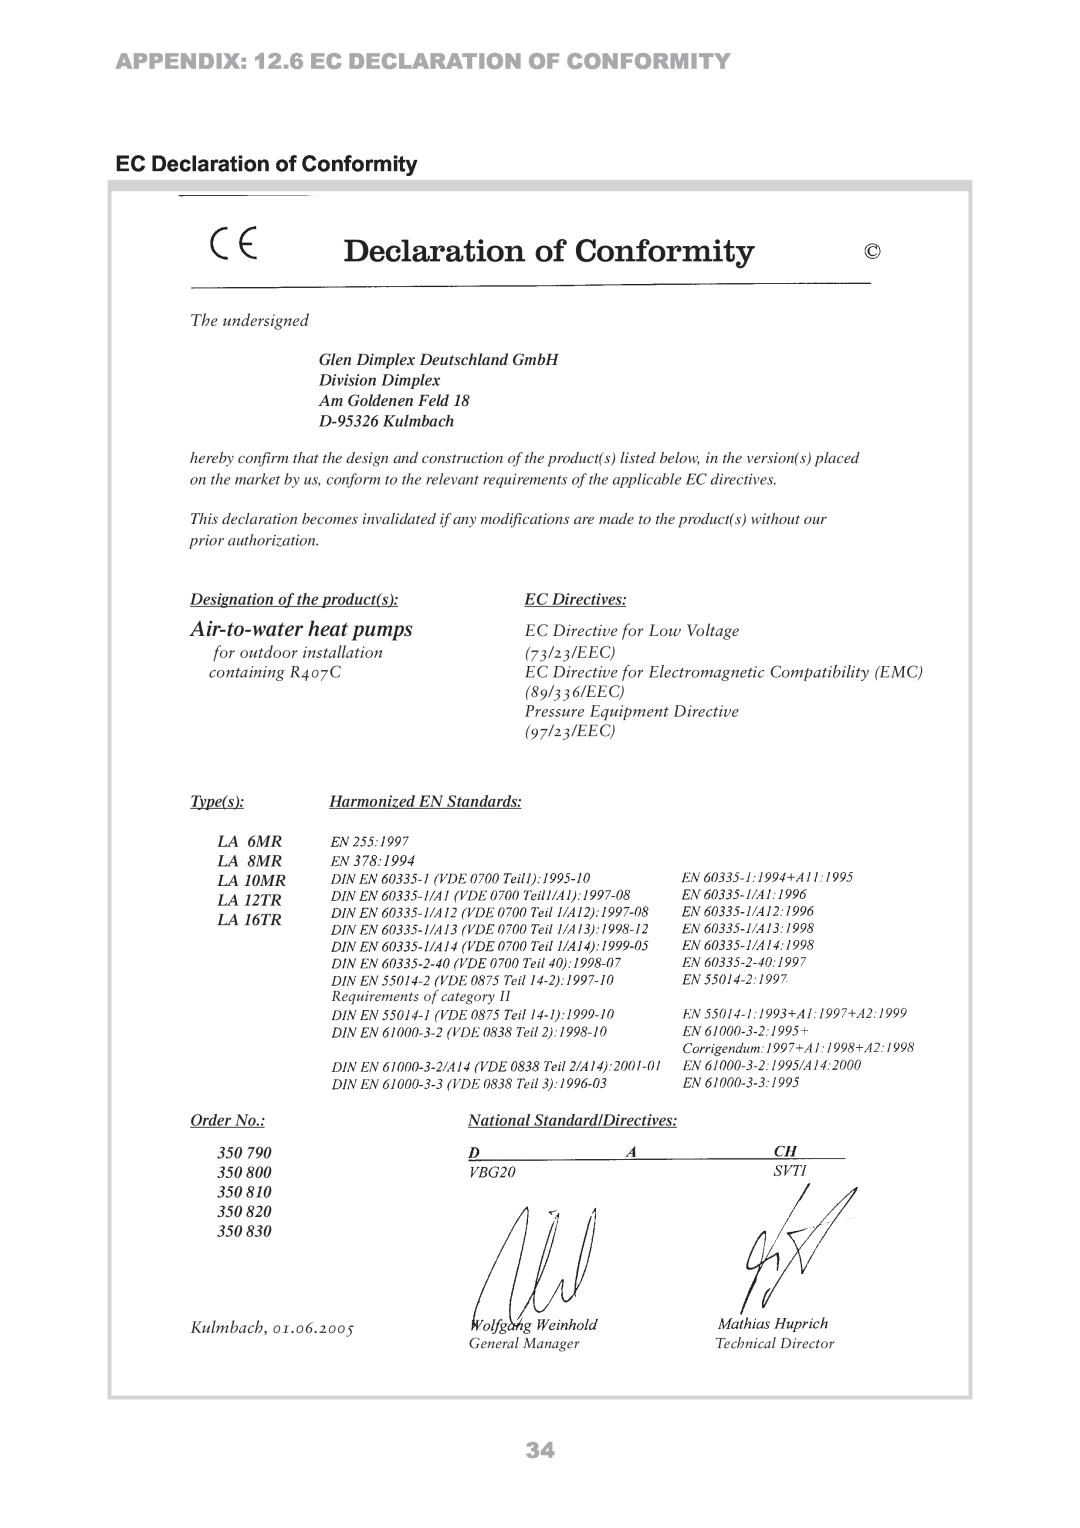 Dimplex LA 10MR, LA 8MR EC Declaration of Conformity, APPENDIX 12.6 EC DECLARATION OF CONFORMITY, Air-to-waterheat pumps 